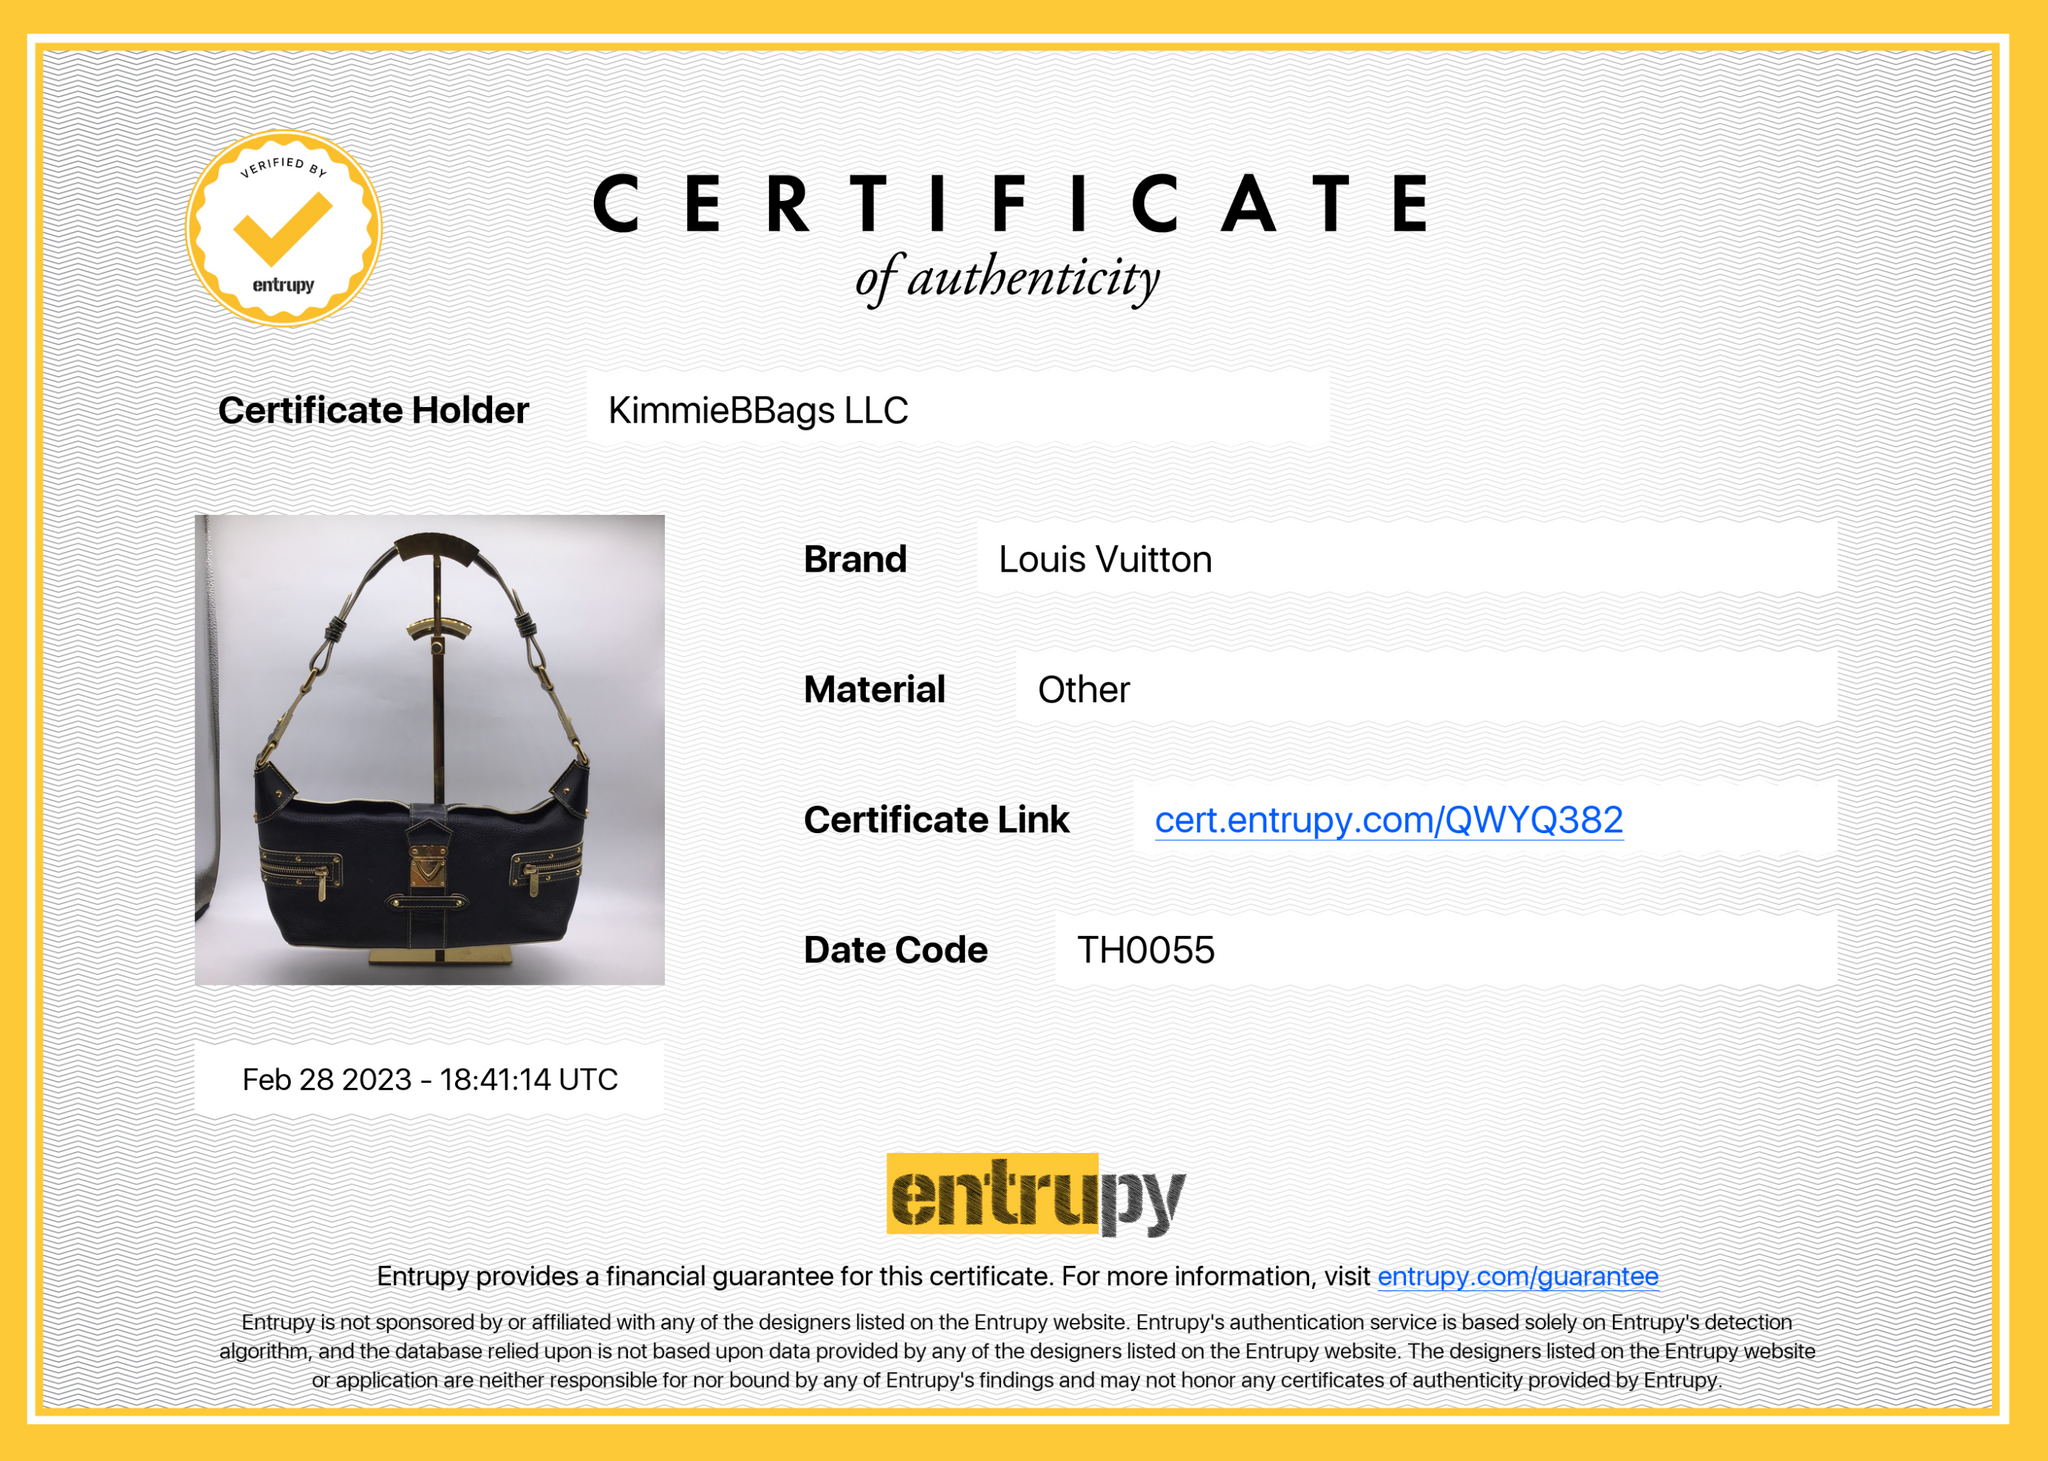 Louis Vuitton, Bags, Sold Louis Vuitton Suhali Le Talentueux Bag